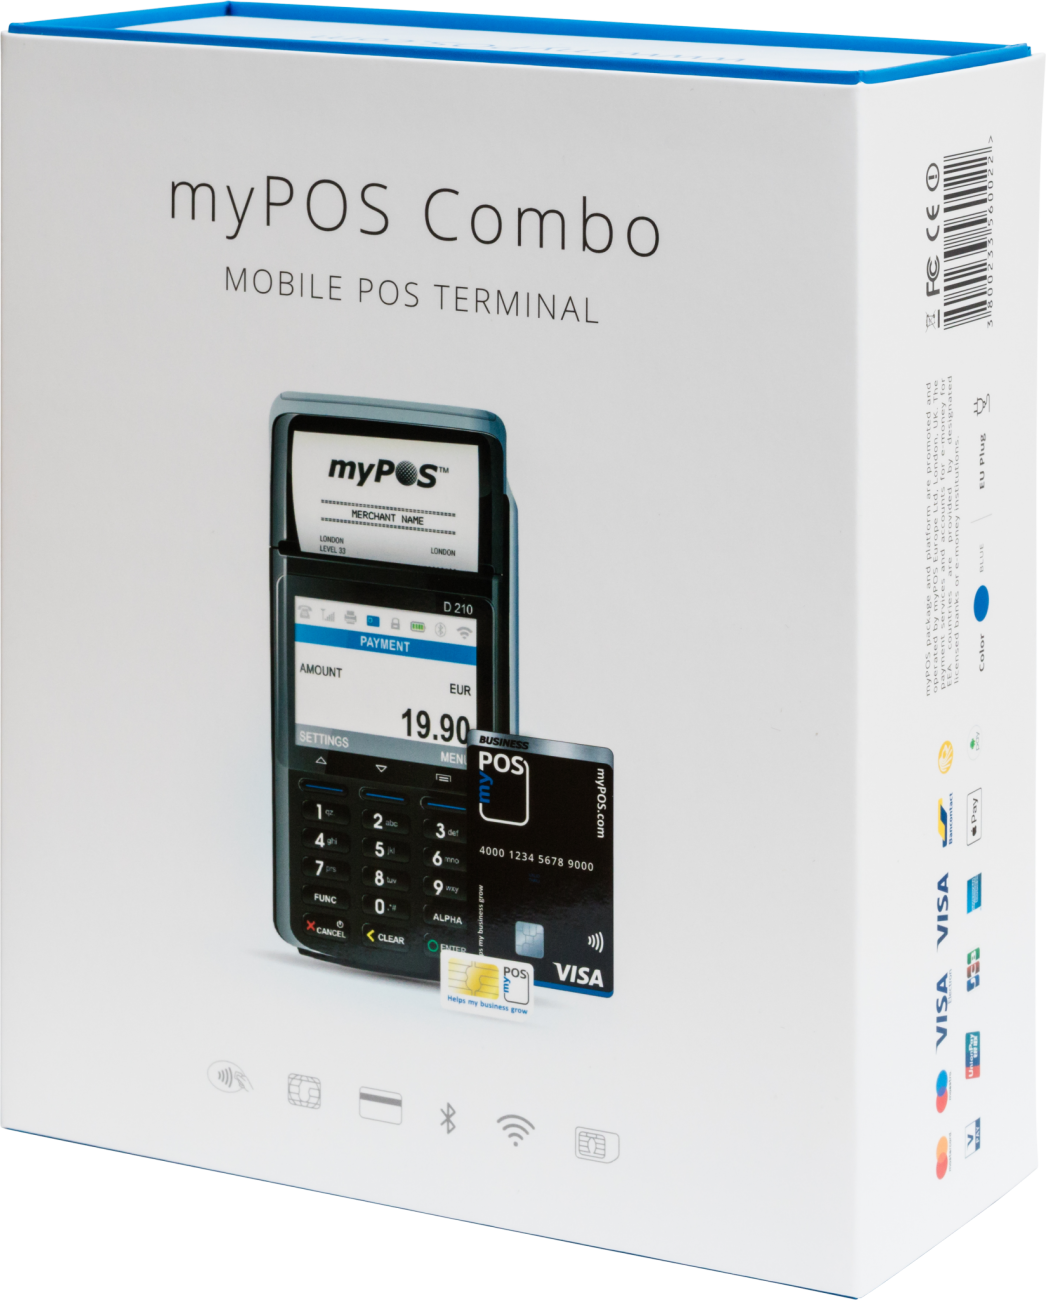 myPOS Go 2, conto corrente e POS portatile a soli 19€